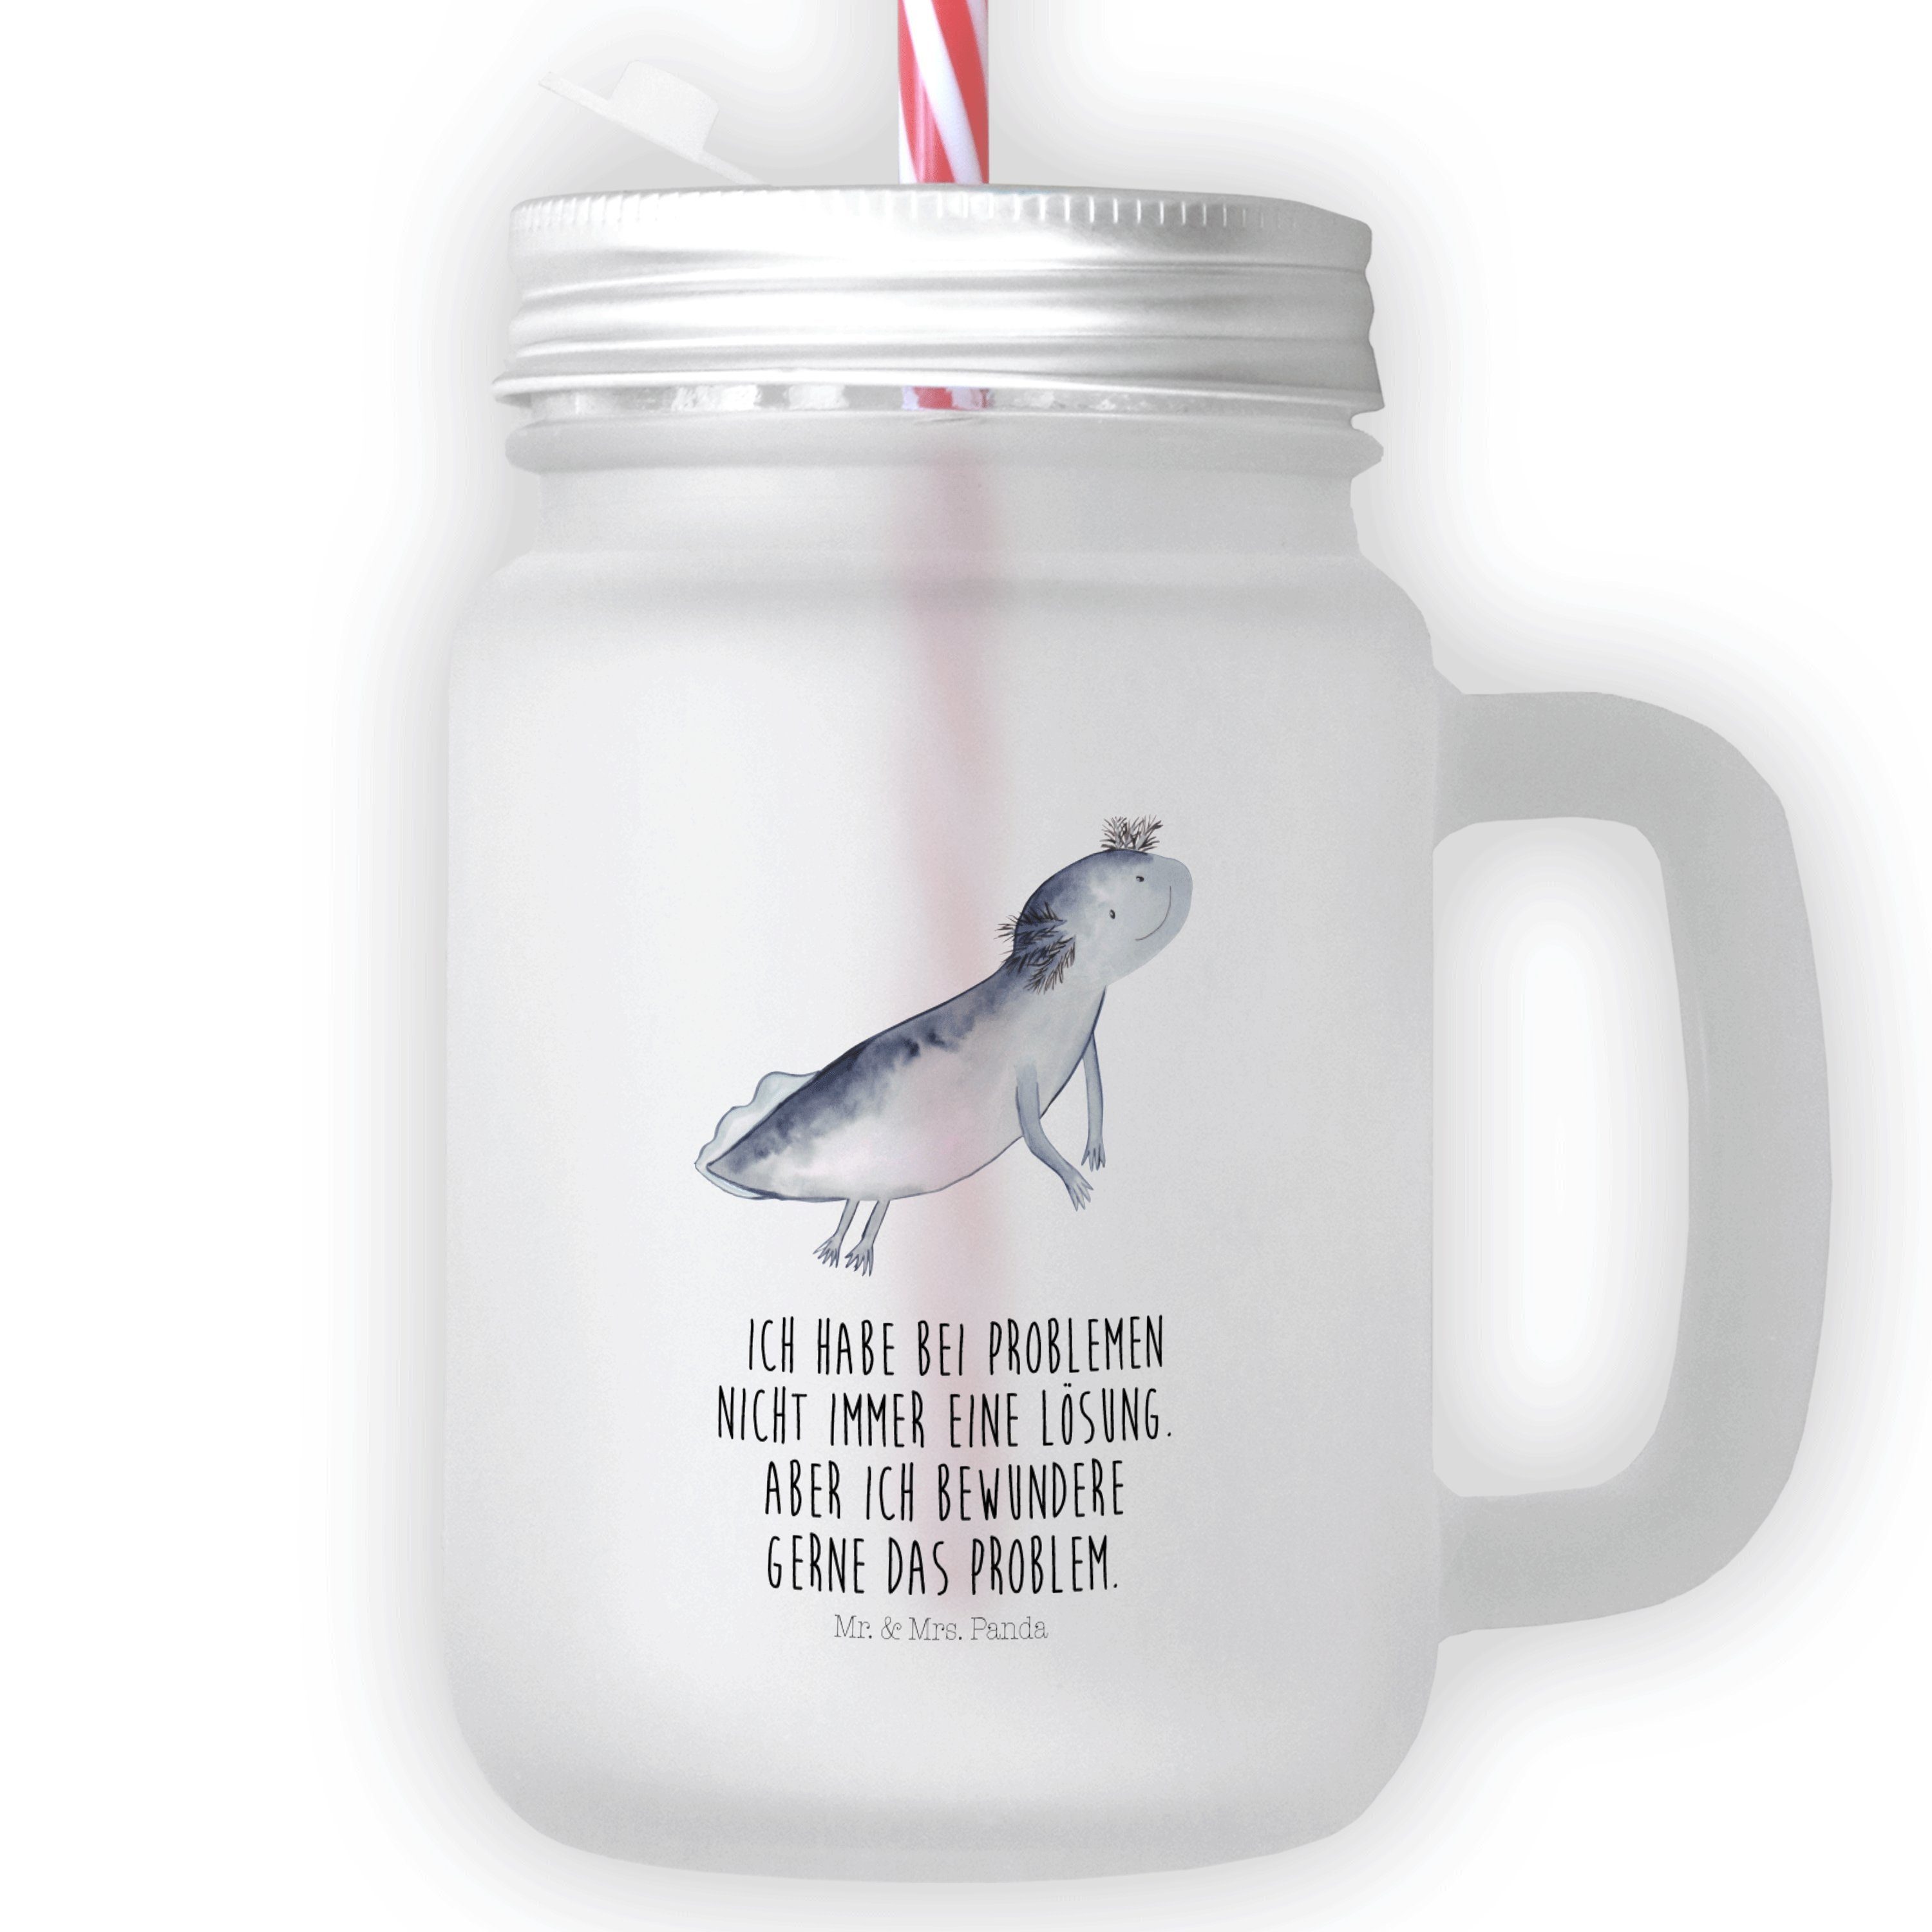 Mr. & Mrs. Panda Glas Axolotl schwimmt - Transparent - Geschenk, Probleme, Lurch, Cocktail-, Premium Glas